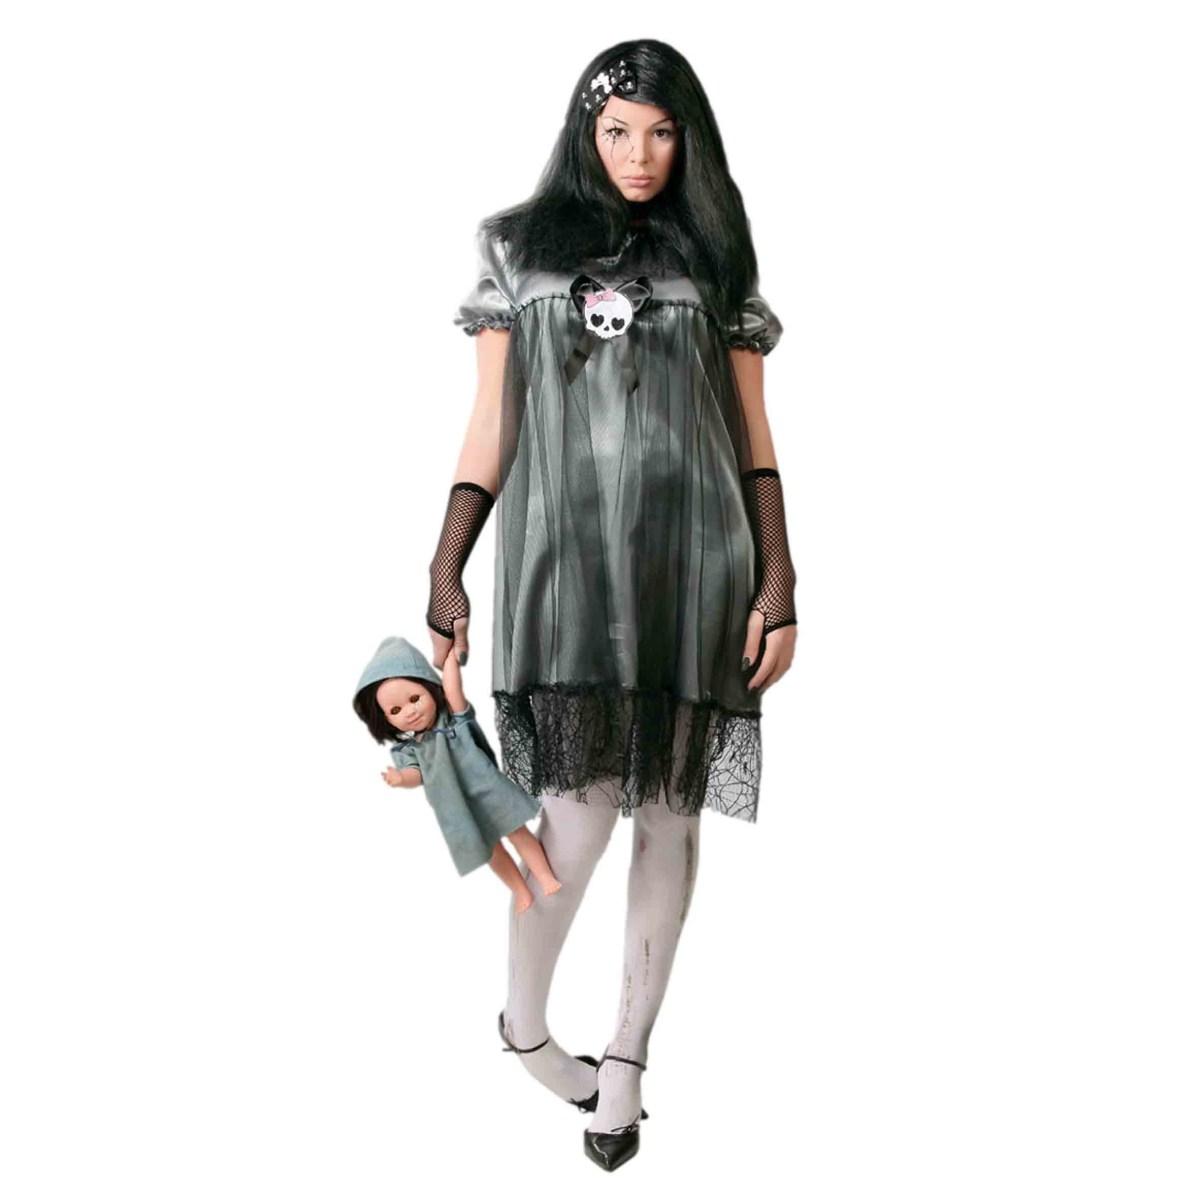 Costume Zombie Bambina Donna: Spaventoso Vestito in Vendita Online